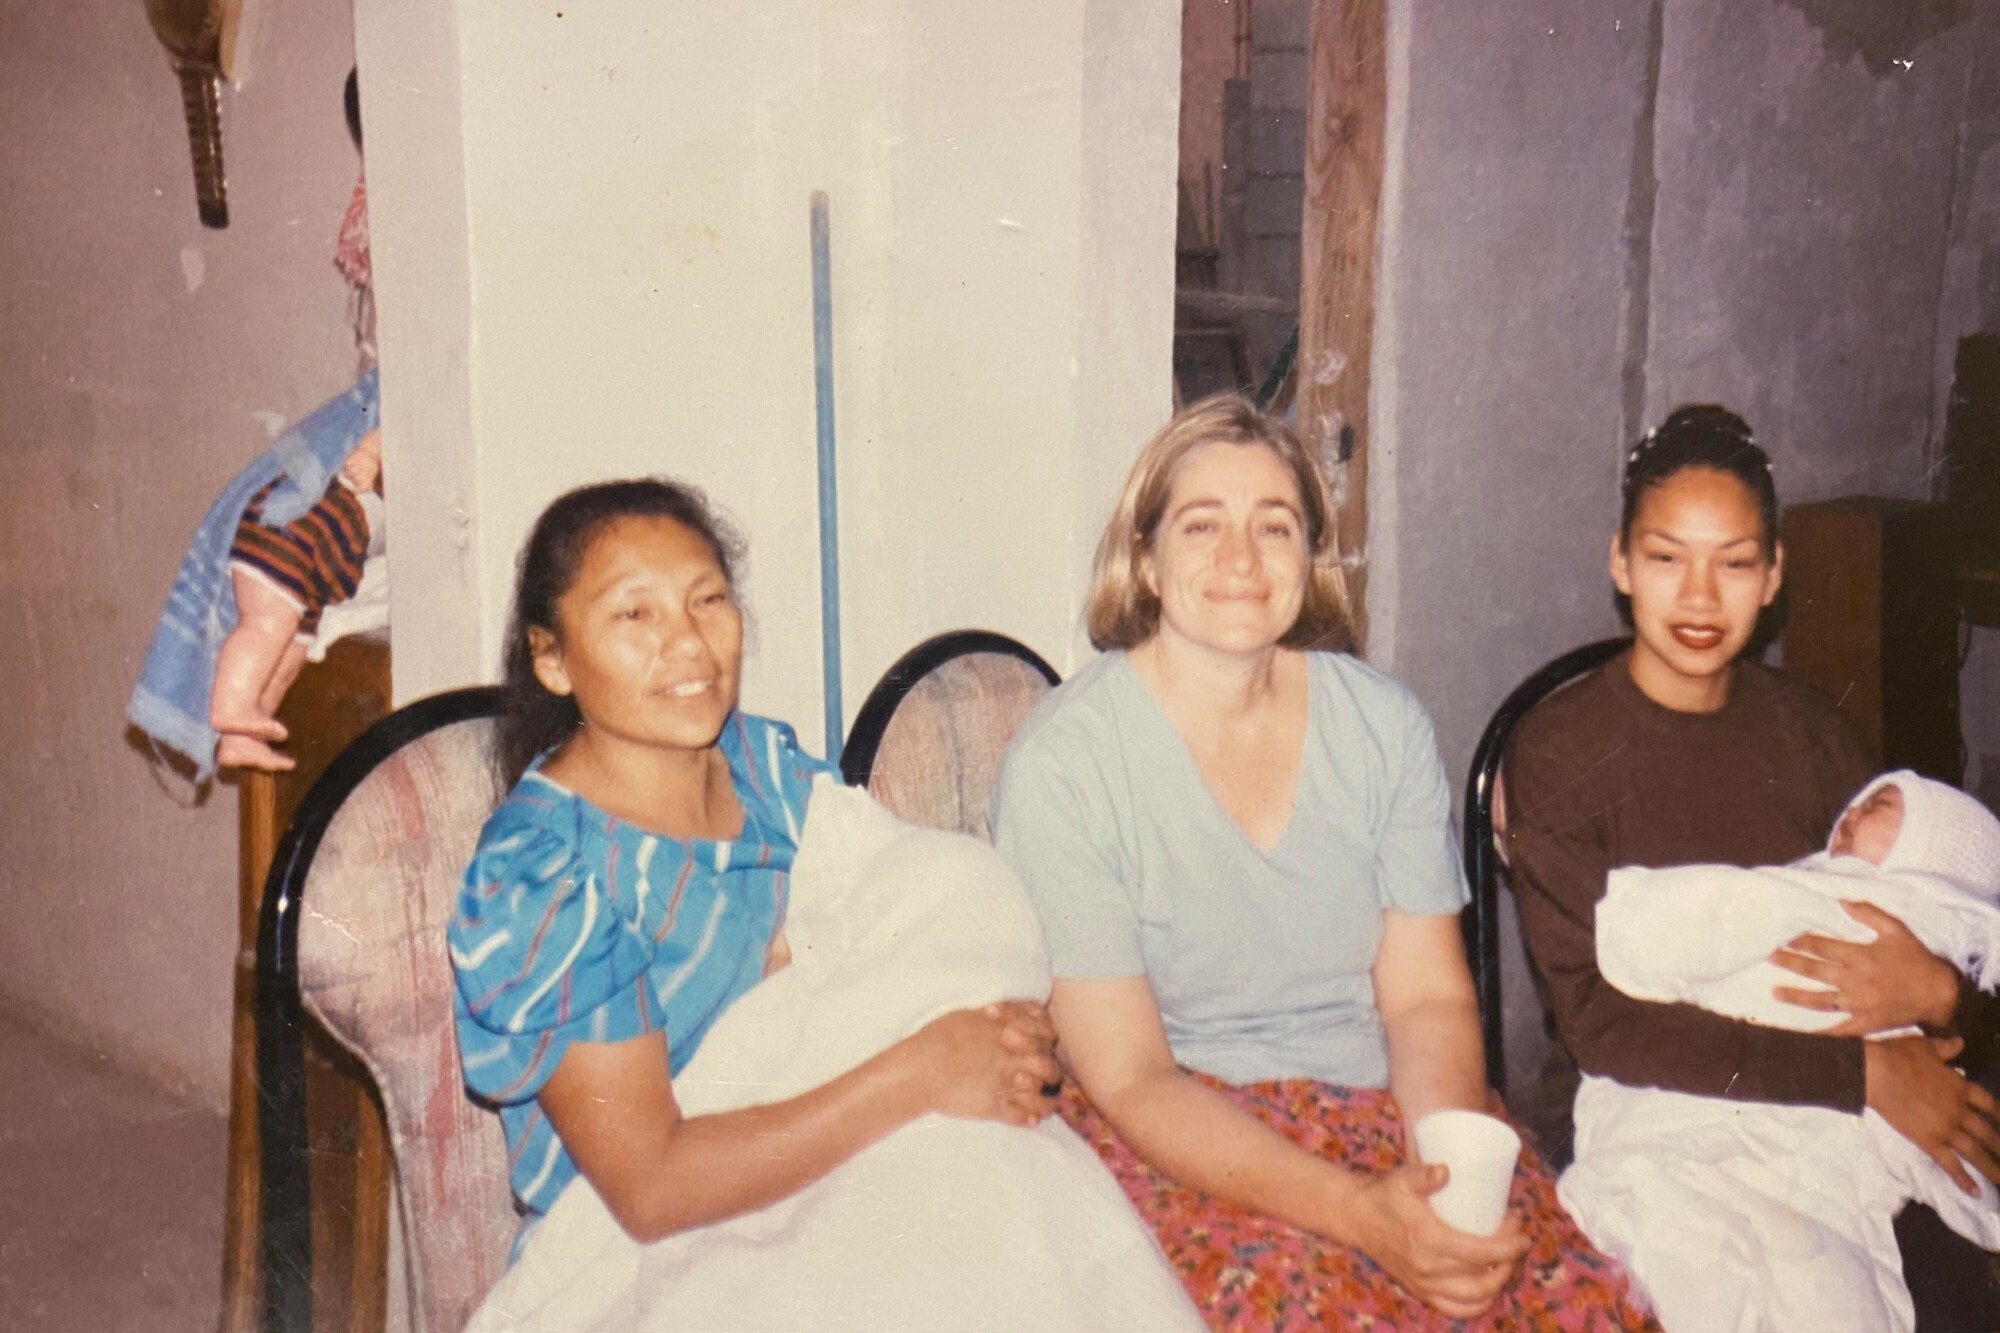 Sandra Dibble, en el centro, con sus amigas Ángela Rangel, a la izquierda, y Teresa, la hija de Ángela